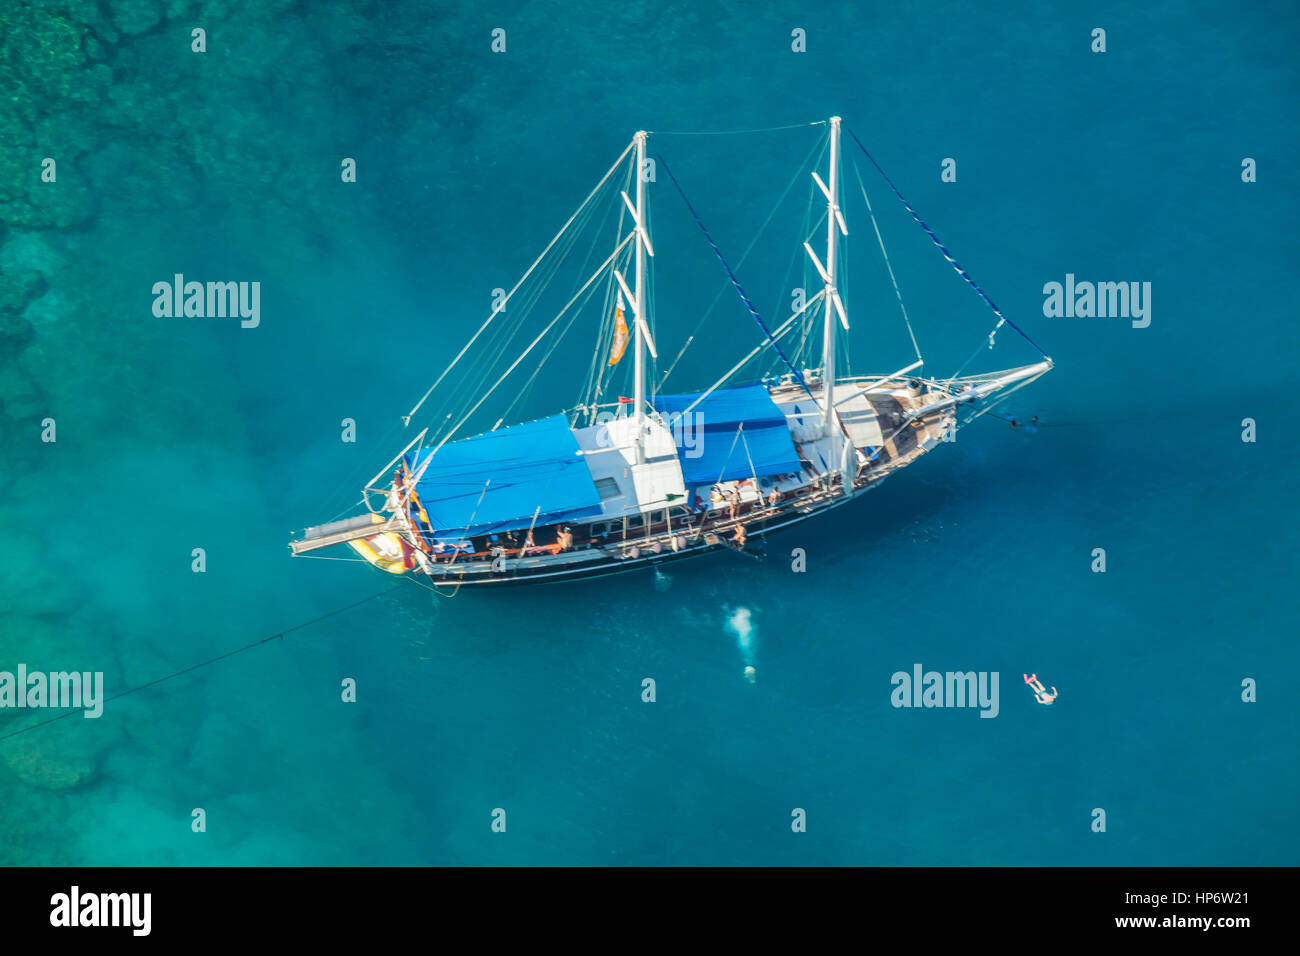 Noleggio Barca Caicco Topview, turco crociera blu barca ancorata nella Valle delle Farfalle. Kelebekler vadisine demirlemiş mavi teknesi tur Foto Stock